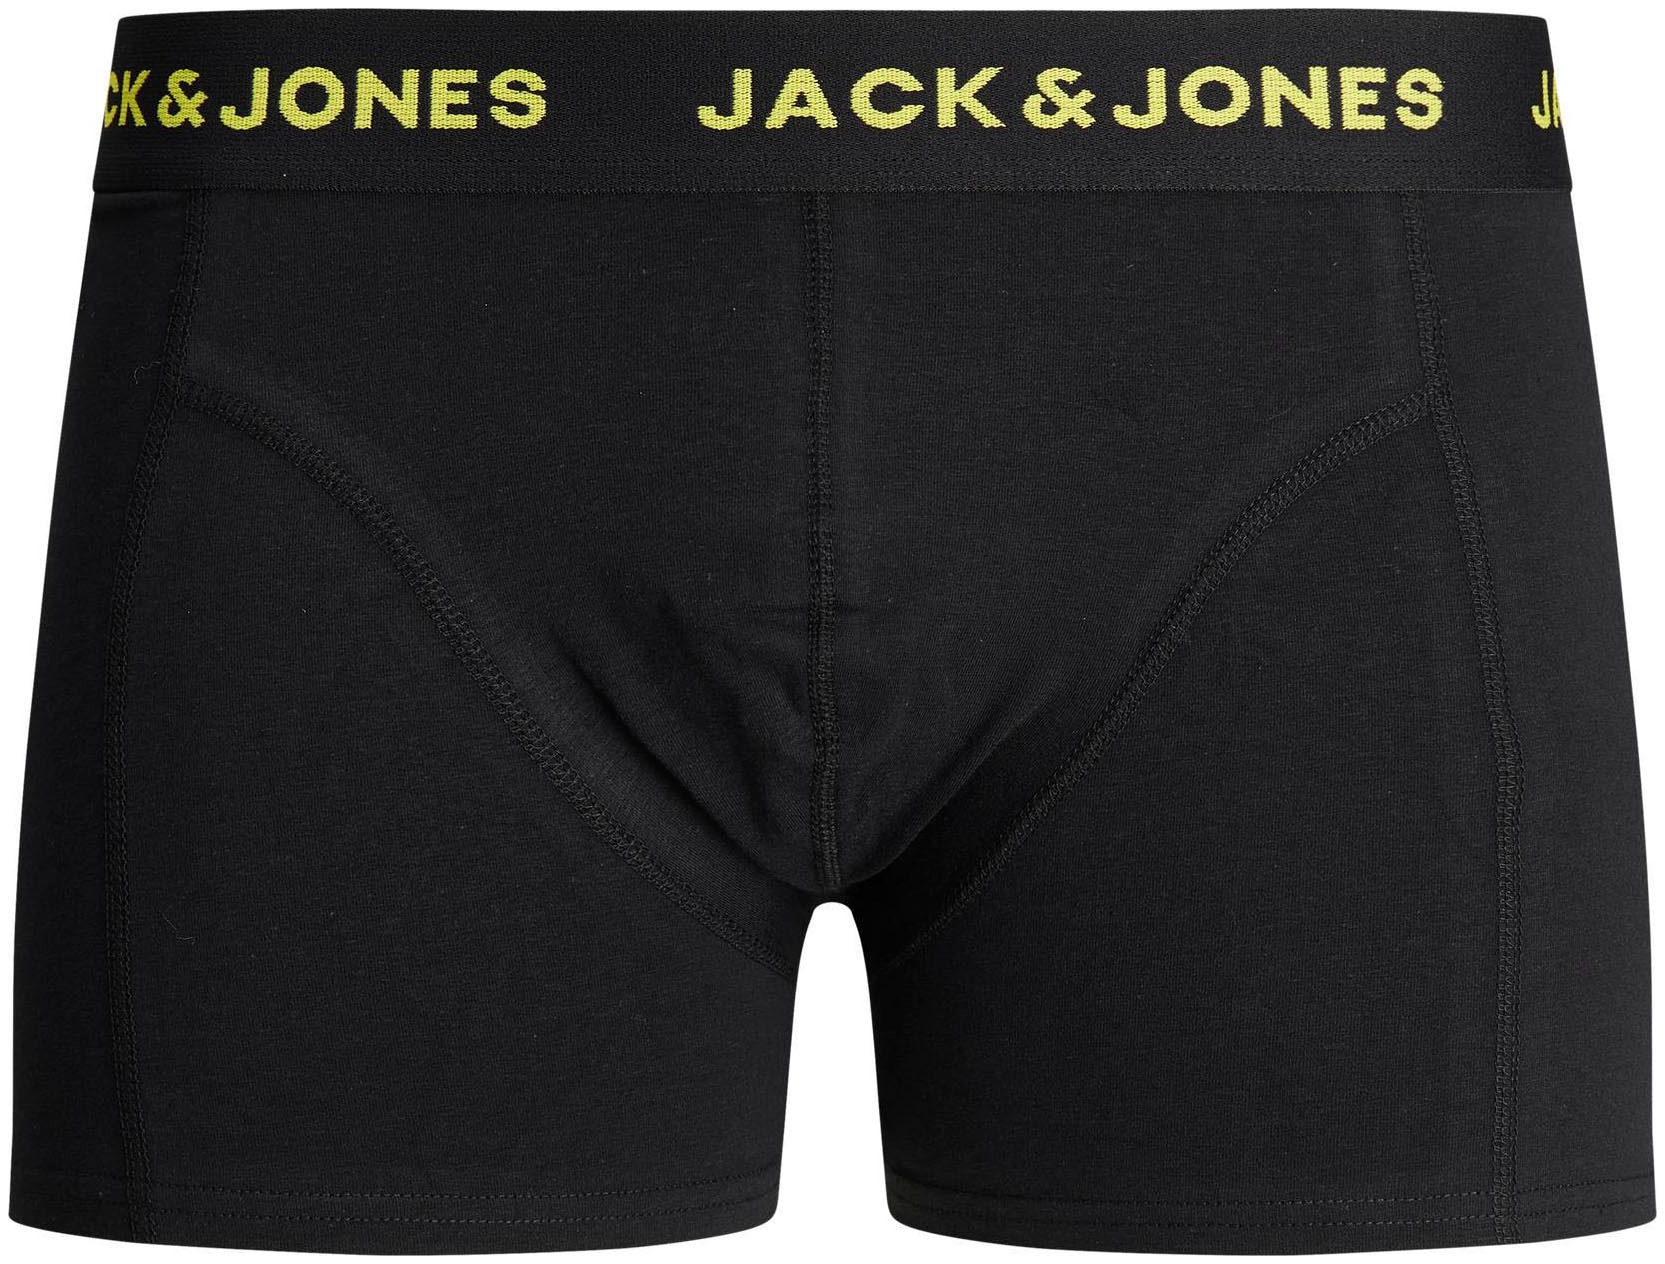 Trendige Jack & Mindestbestellwert (Packung, Junior Boxershorts, ohne 3 St.) bestellen Jones